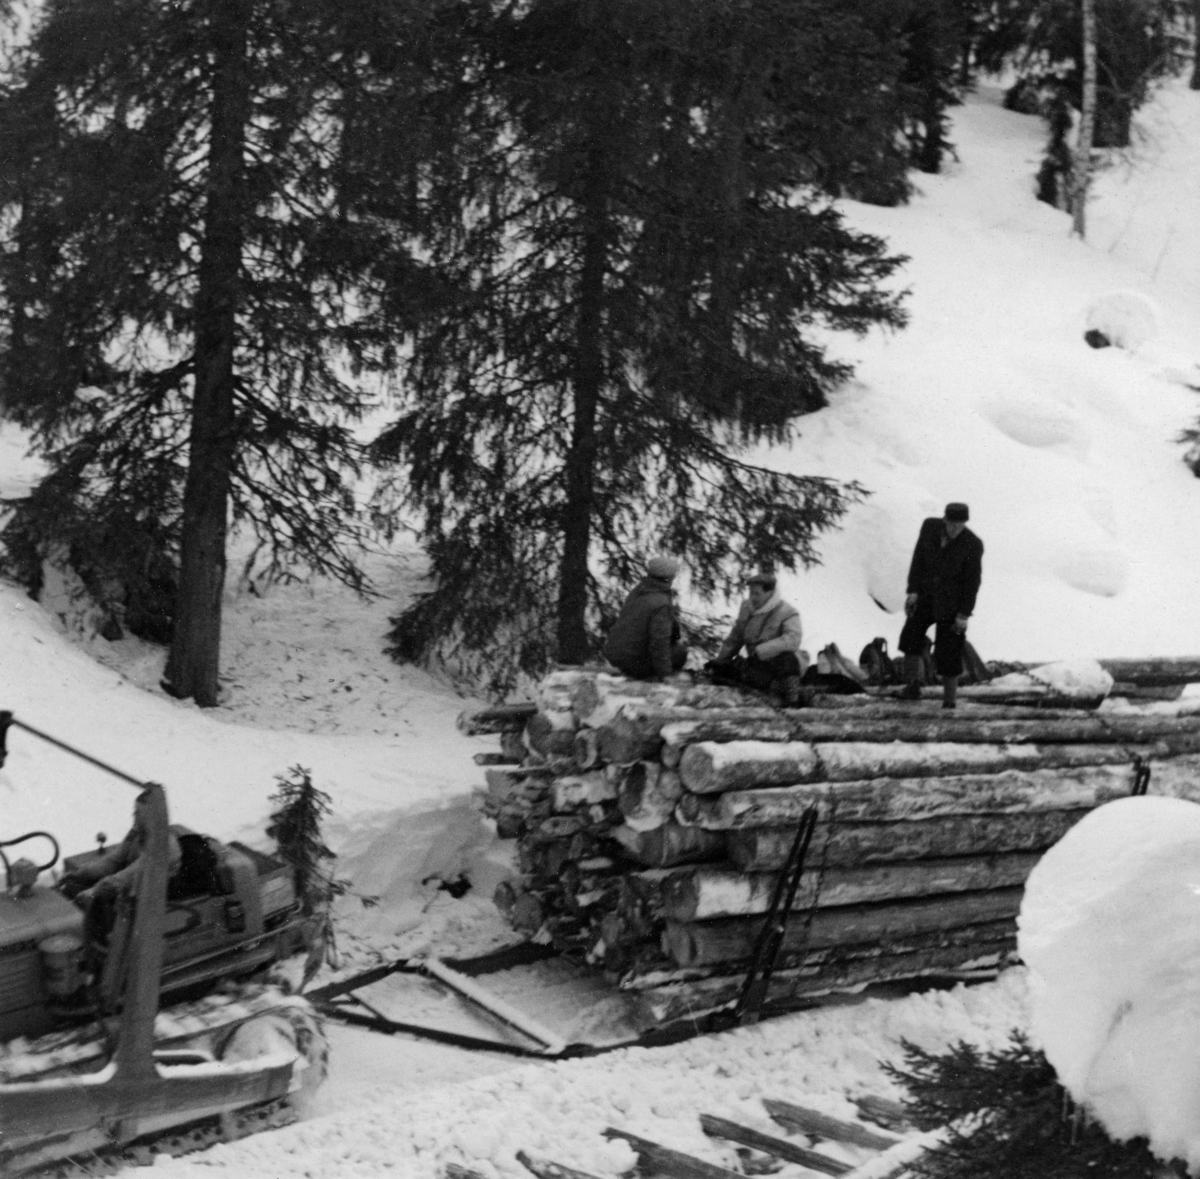 Tømmerrustning, konstruert for beltebiler som firmaet And. H. Kiær & Co. Ltd. tok i bruk i noen av sine vanskeligst tilgjengelige skoger i første halvdel av 1950-åra.  Bildet er tatt fra en bratt bakkekam, ned mot den bakre delen av beltebilen og den fremre delen av lasset på den kraftige, todelte sleden.  Tre menn befant seg oppe på det for sin tid uvanlig digre tømmerlasset.  Fagbladet «Skogeieren» hadde i 1950 en reportasje der de fulgte ei tømmervending hvor det ble kjørt 80 stokker på en slik slede, som i motsetning til tilsvarende doninger for hest, hadde kraftige stålstaker på sidene og et eget ståldrag i fronten.  I tillegg til det tømmeret som befant seg på sleden, var det vanlig at kjørerne la «etterslått», en serie av tømmerfloer som ble slept på den snøpakkete vegen bak beltekjøretøyet og rustningen.  Det lasset fagbladet «Skogeieren» fulgte besto til sammen av 145 stokker, hadde et volum på 18, 7 kubikkmeter og var 70 meter langt.  Denne transportmåten skal ikke ha vært like hemmet av snøfall eller mildvær med klabbeføre som sledekjøring med hest.  Forstmannen Hans Berger, som var skogsbestyrer hos And. H. Kiær & Co. Ltd. og hadde ansvaret for en del av beltebildriftene, rapporterte om at de både gjorde det mulig å hente tømmer fra steder som var langt på veg utilgjengelige med hest, og at driftskostnadene per kubikkmeter ble noe lavere med motorisert transport (jfr. notat som er gjengitt under fanen «Andre opplysninger»). 